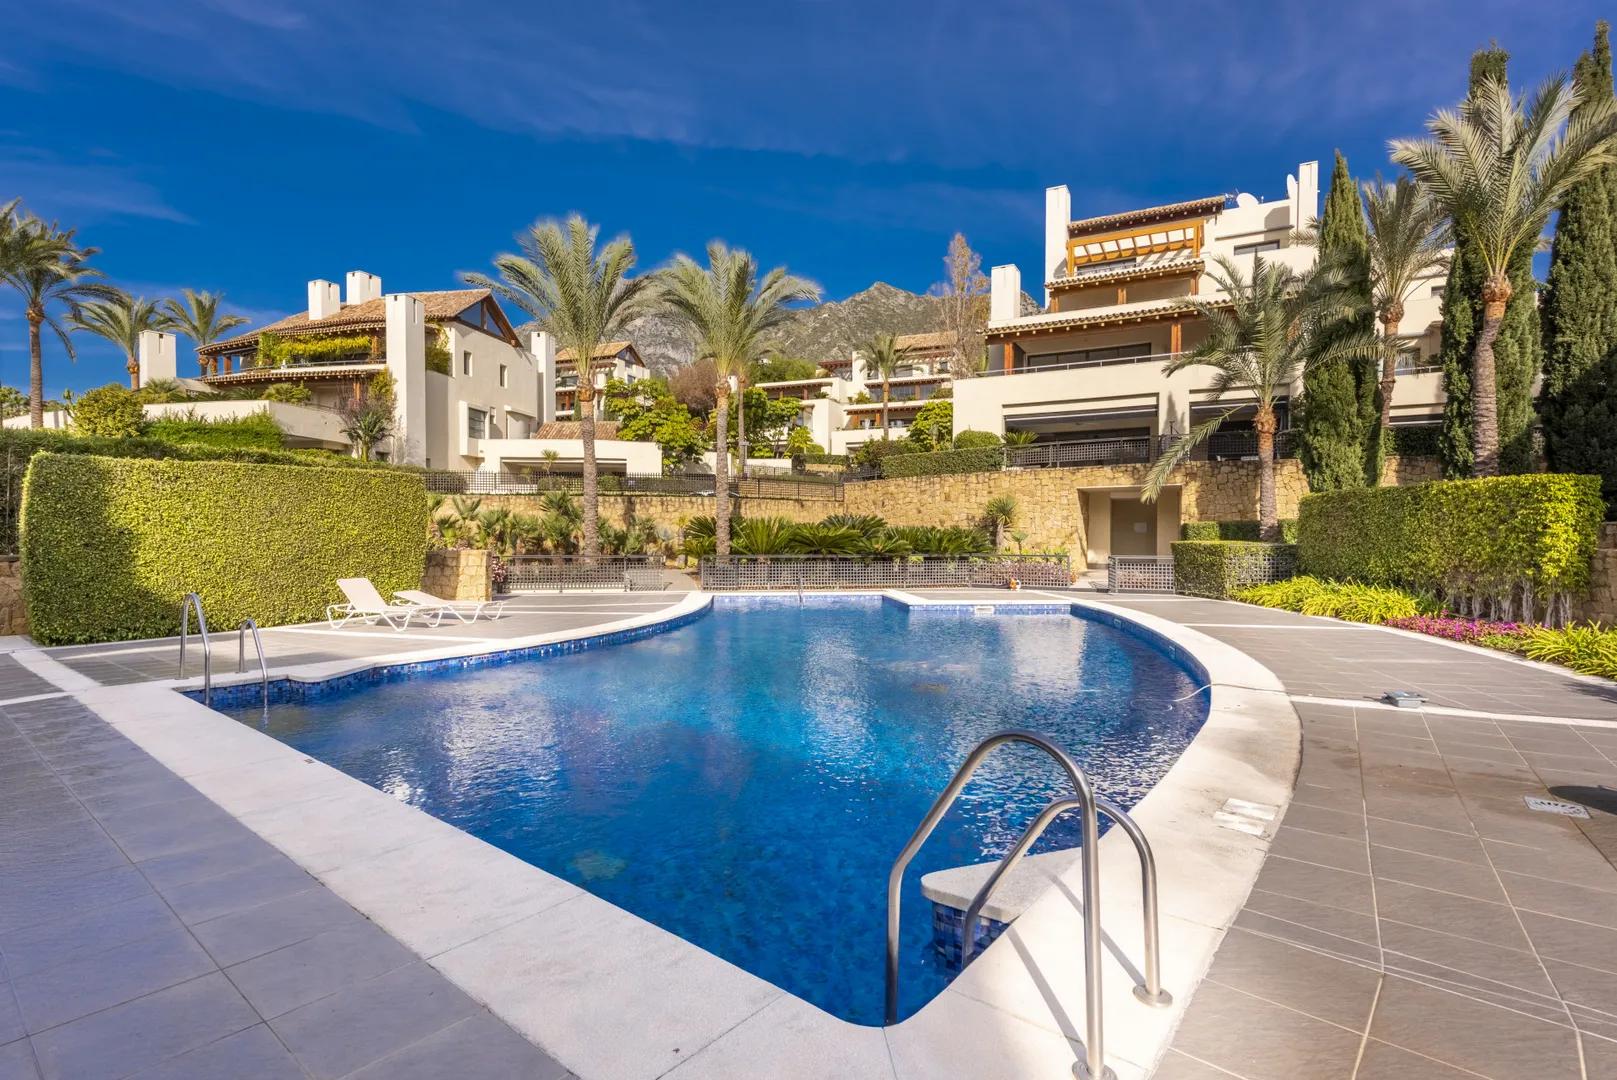 Apartamento de 3 dormitorios en zona cotizada de Marbella con jardín privado y terraza acristalada